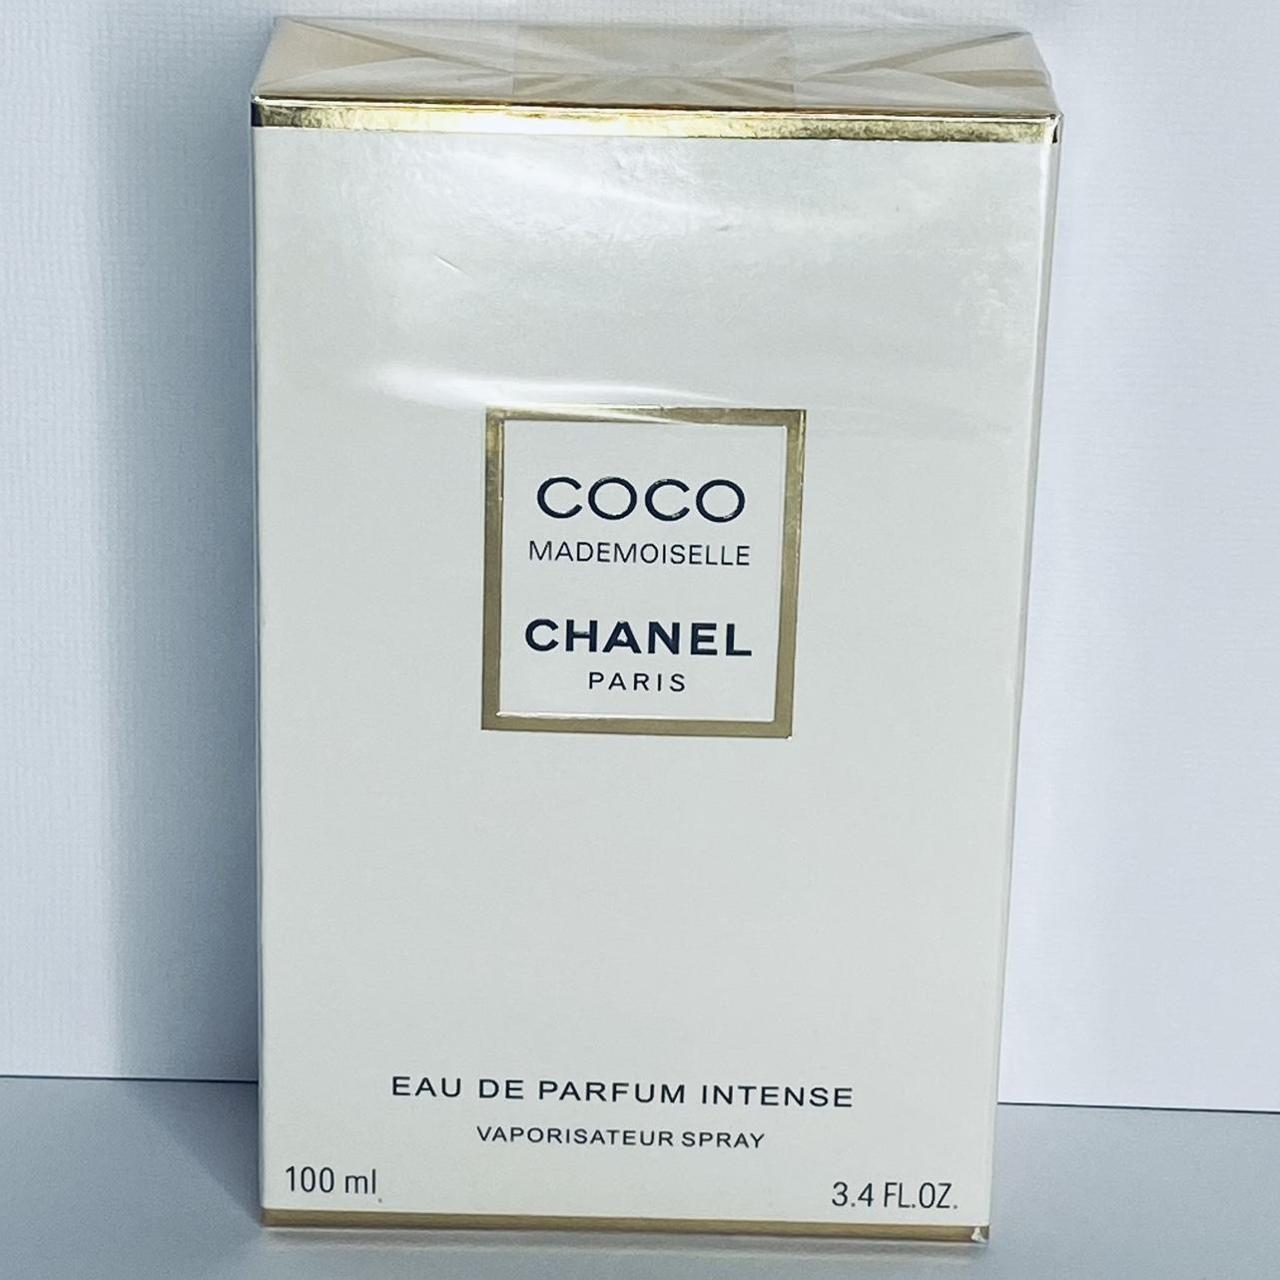 Chanel Coco Mademoiselle Eau De Parfum Intense 3.4 - Depop